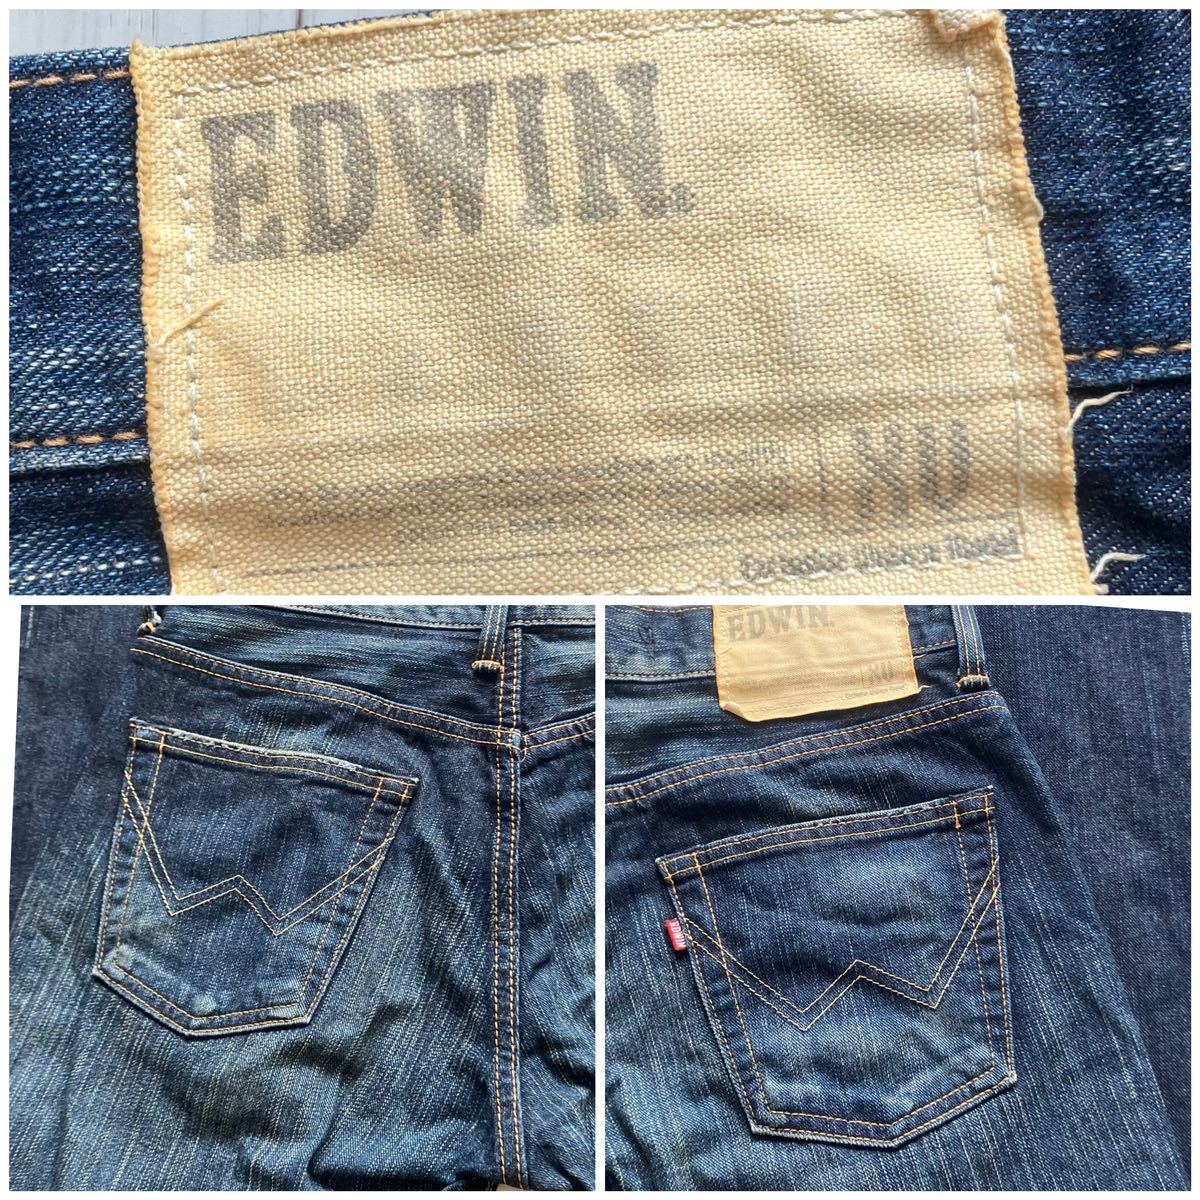  быстрое решение W29 Edwin EDWIN 401XV flair серия Denim ботинки cut длина .. джинсы сделано в Японии хлопок 100% orange желтый стежок б/у hige обработка 